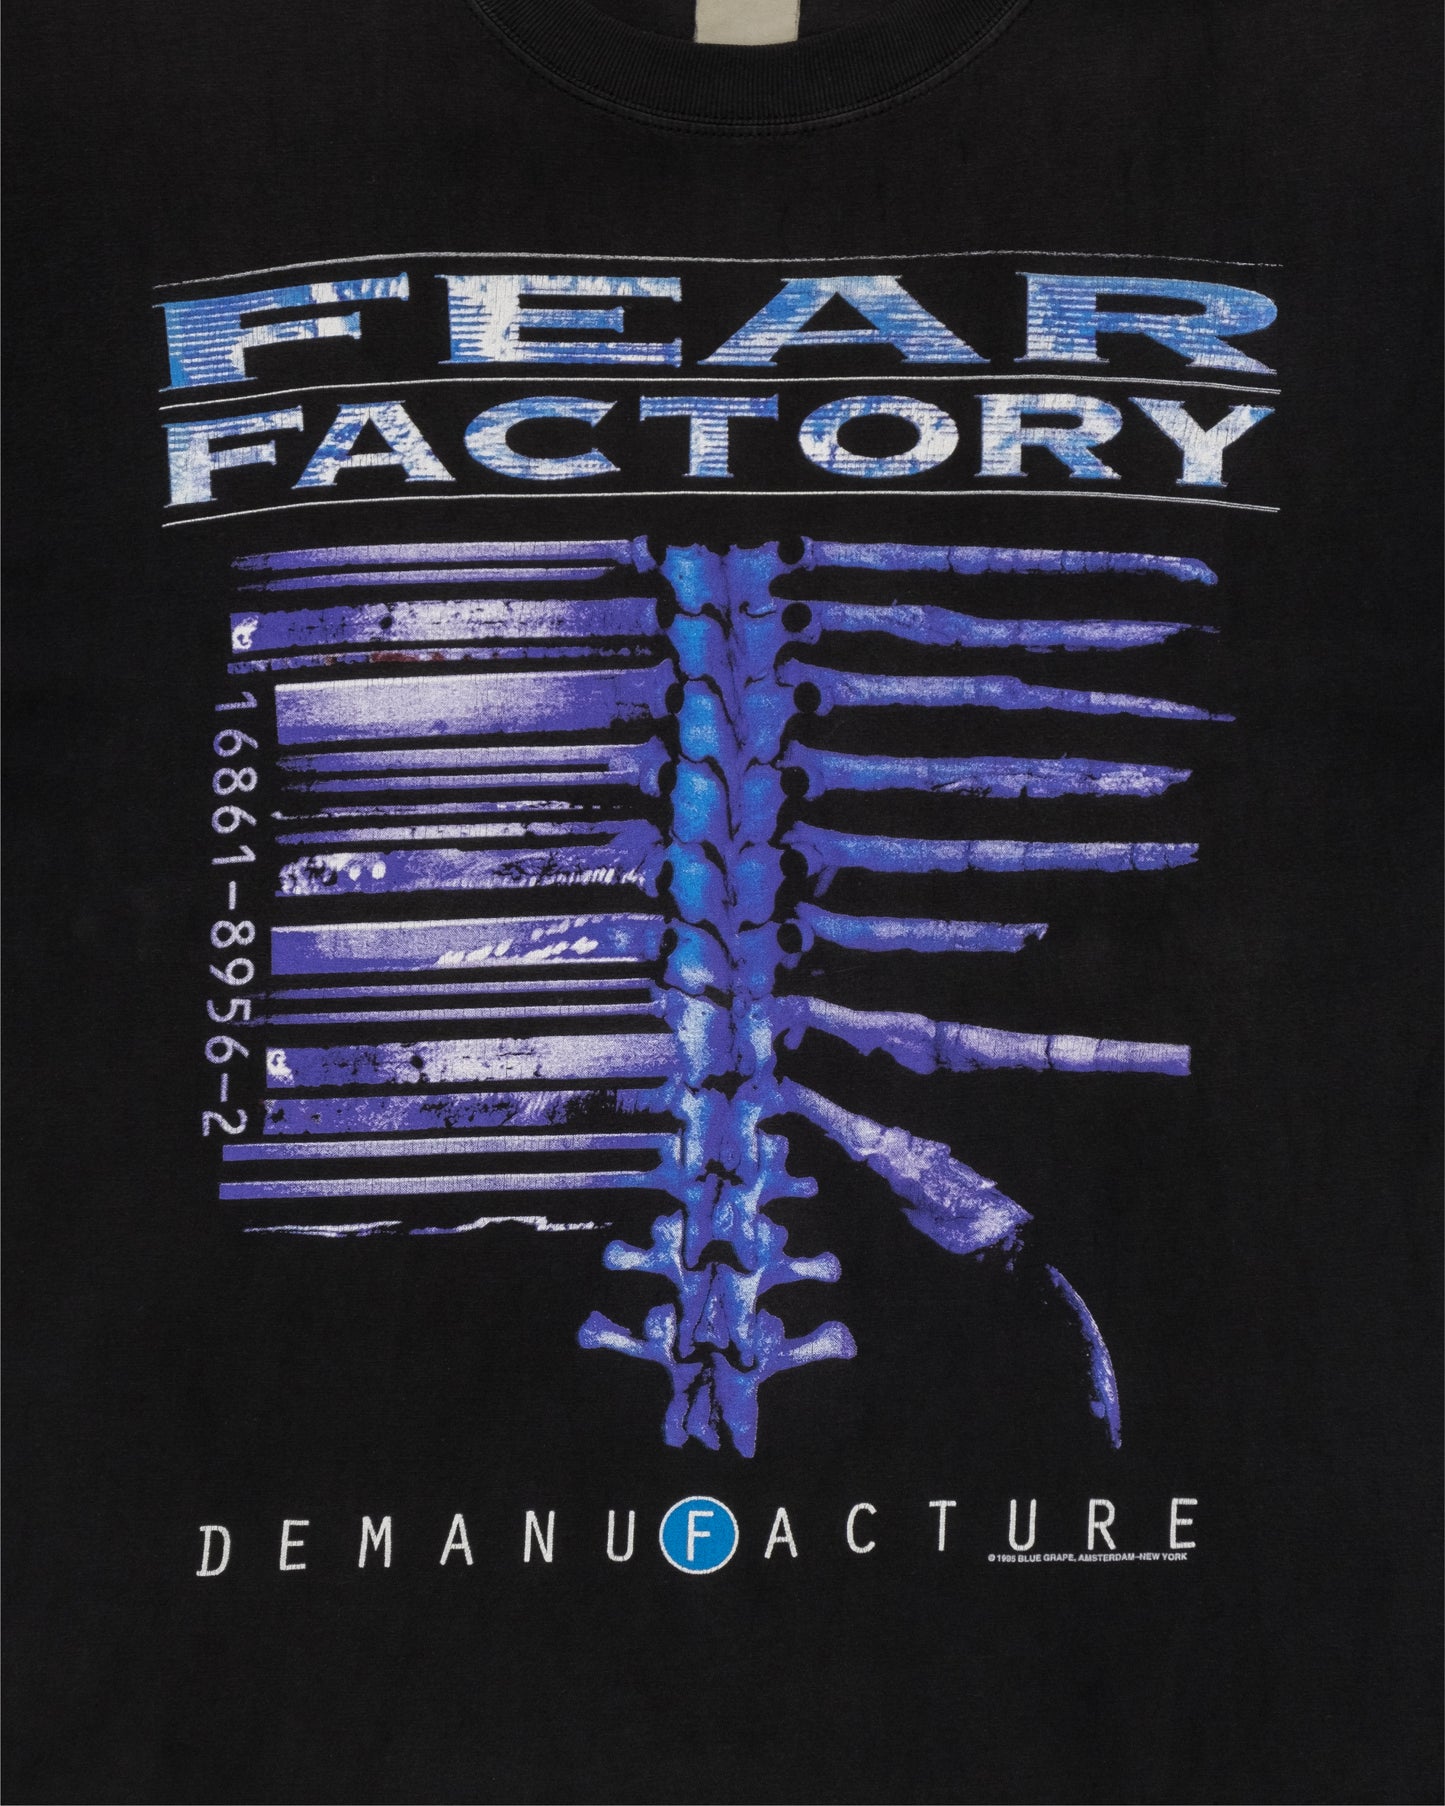 1995 Fear Factory T-Shirt